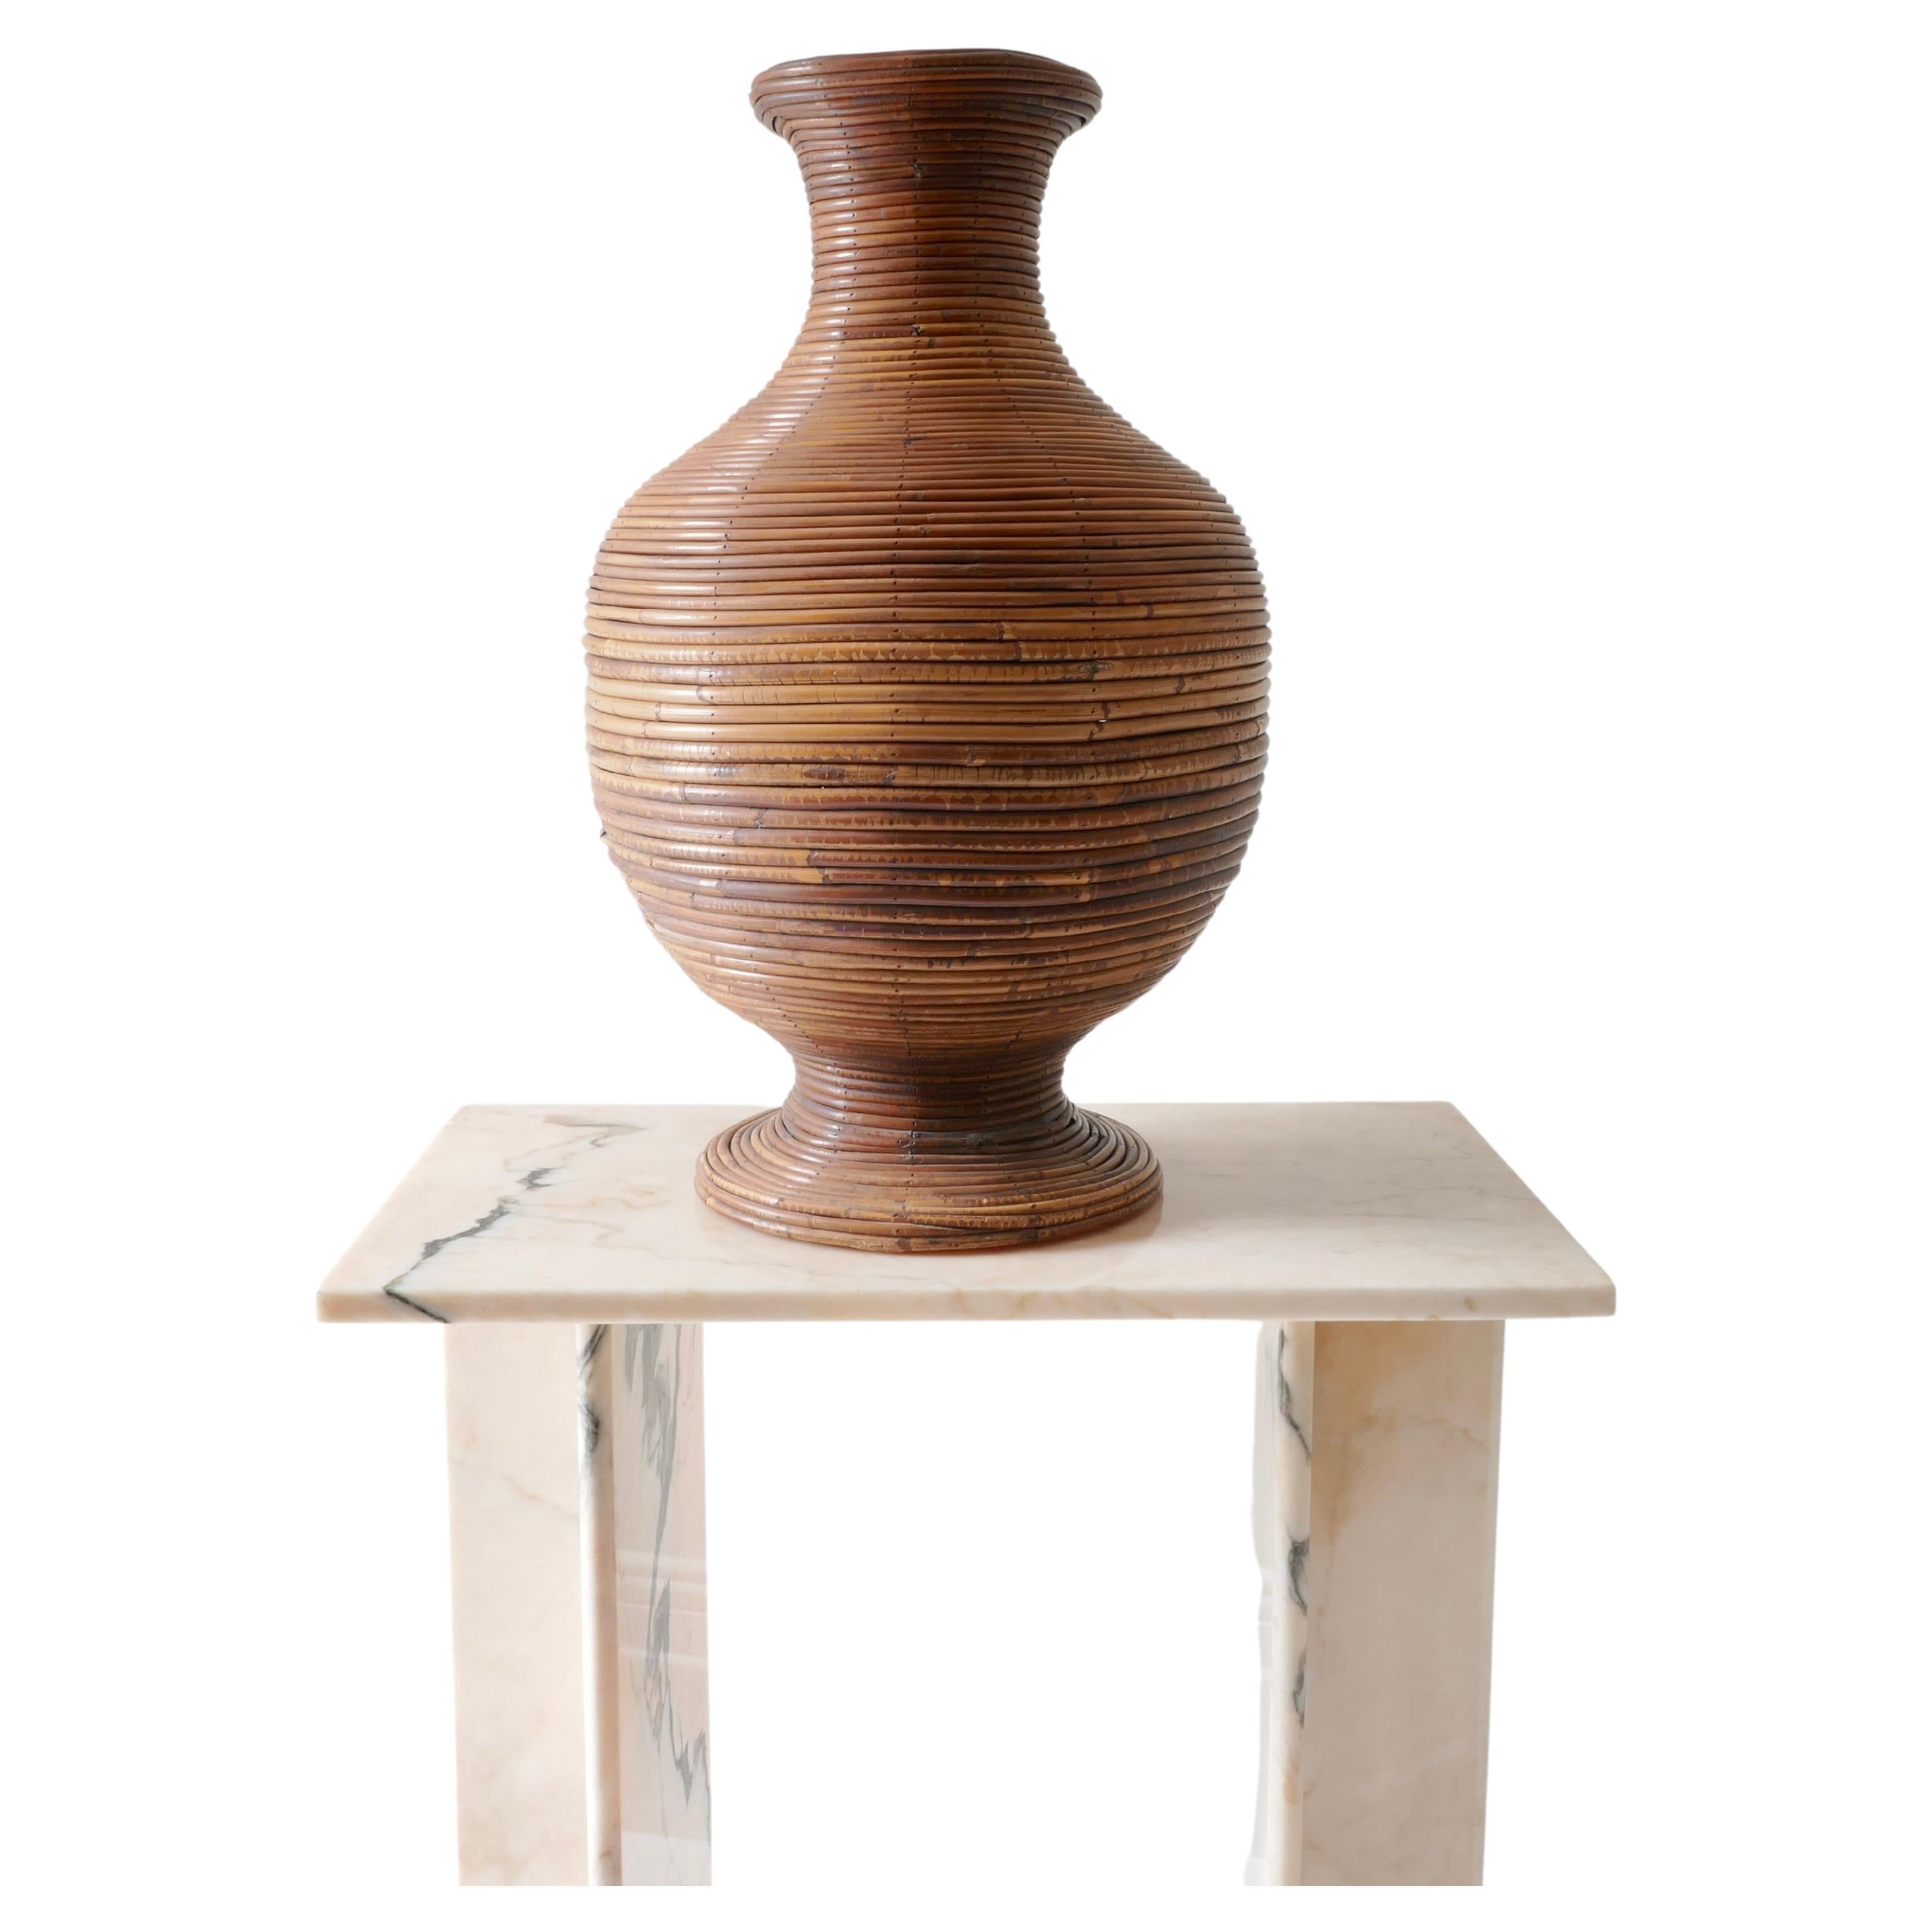 Eine große Vase eignet sich hervorragend für getrocknete Gestecke oder als Einzelgefäß. 
Große und beeindruckende Urne aus der Mitte des Jahrhunderts, gefertigt aus Bleistiftschilf in klassischer runder Form mit üppiger warmer Oberfläche. Zeitlos